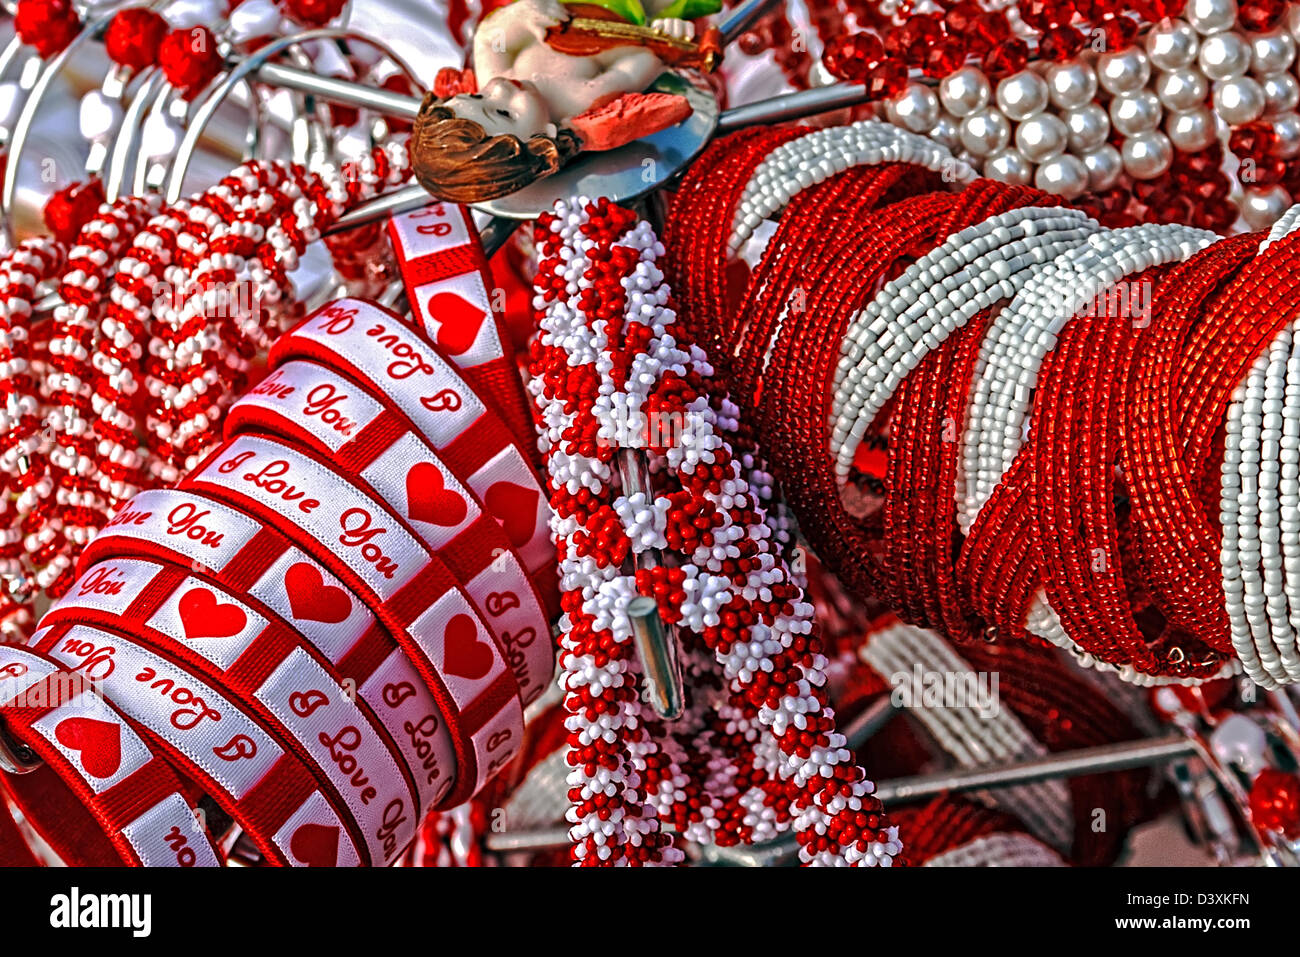 Pulseras con amor logos, abalorios y collares en blanco y rojo, se muestra en un stand. Simboliza la llegada de la primavera Fotografía de stock - Alamy